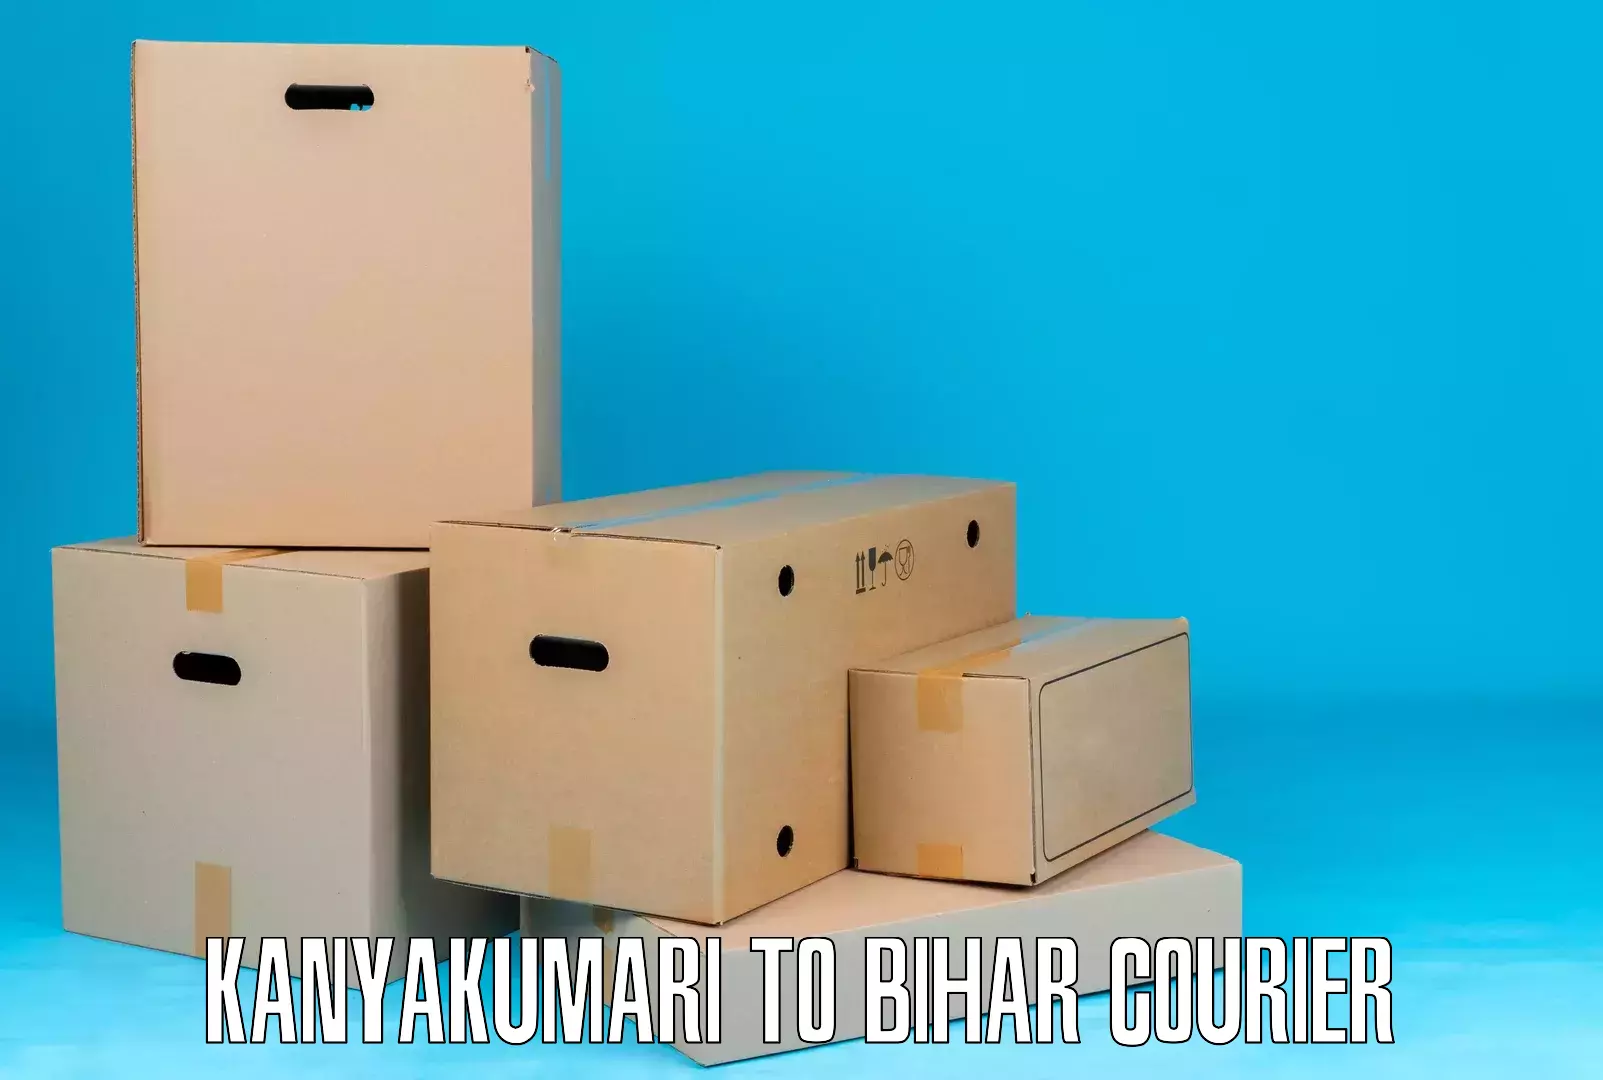 Modern courier technology Kanyakumari to Bhorey